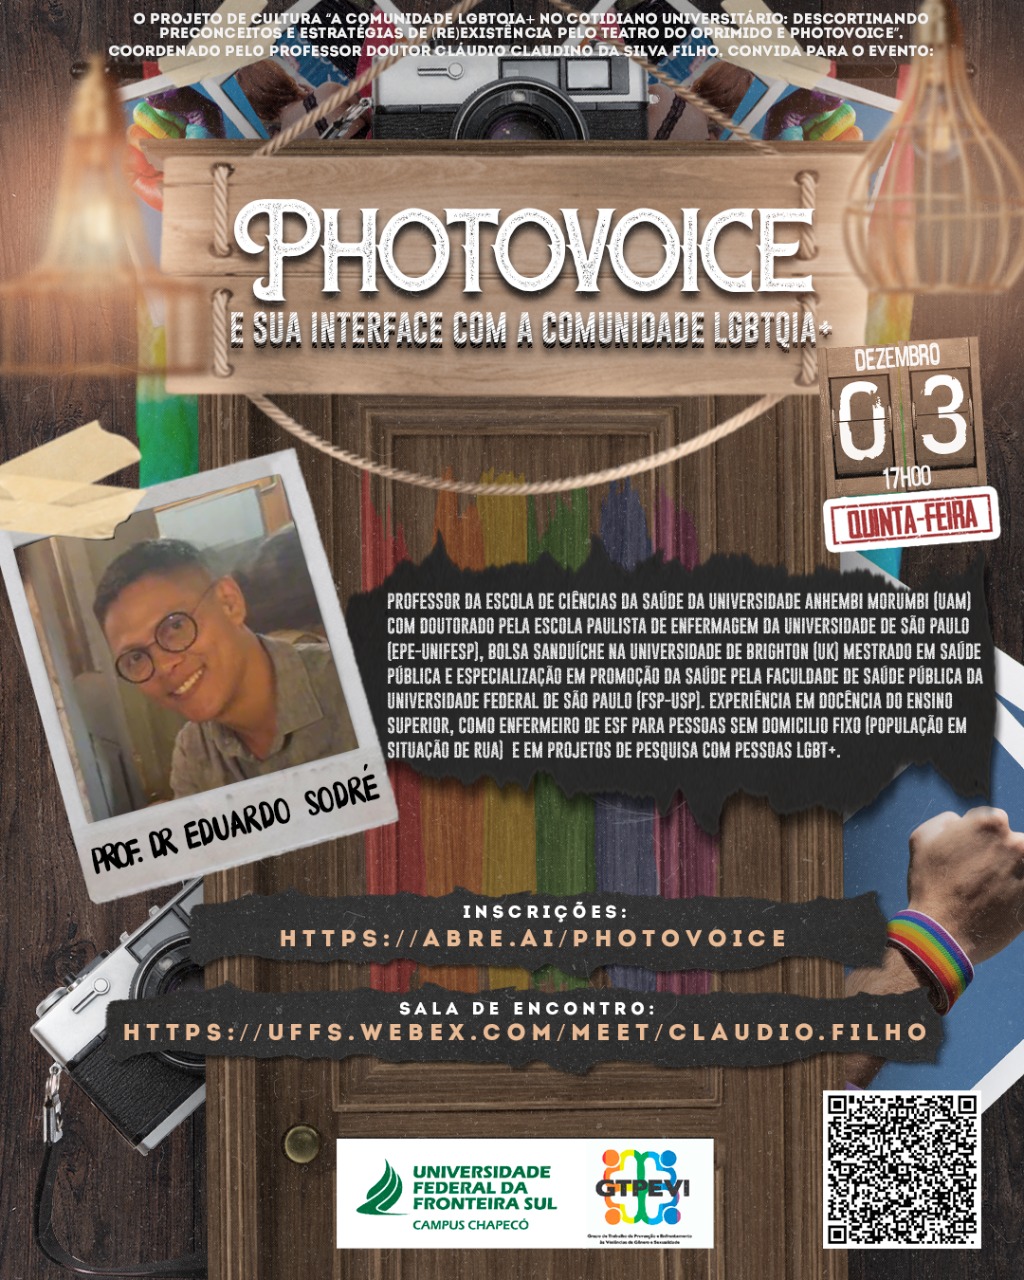 Photovoice e sua interface com a comunidade LGBTQIA+